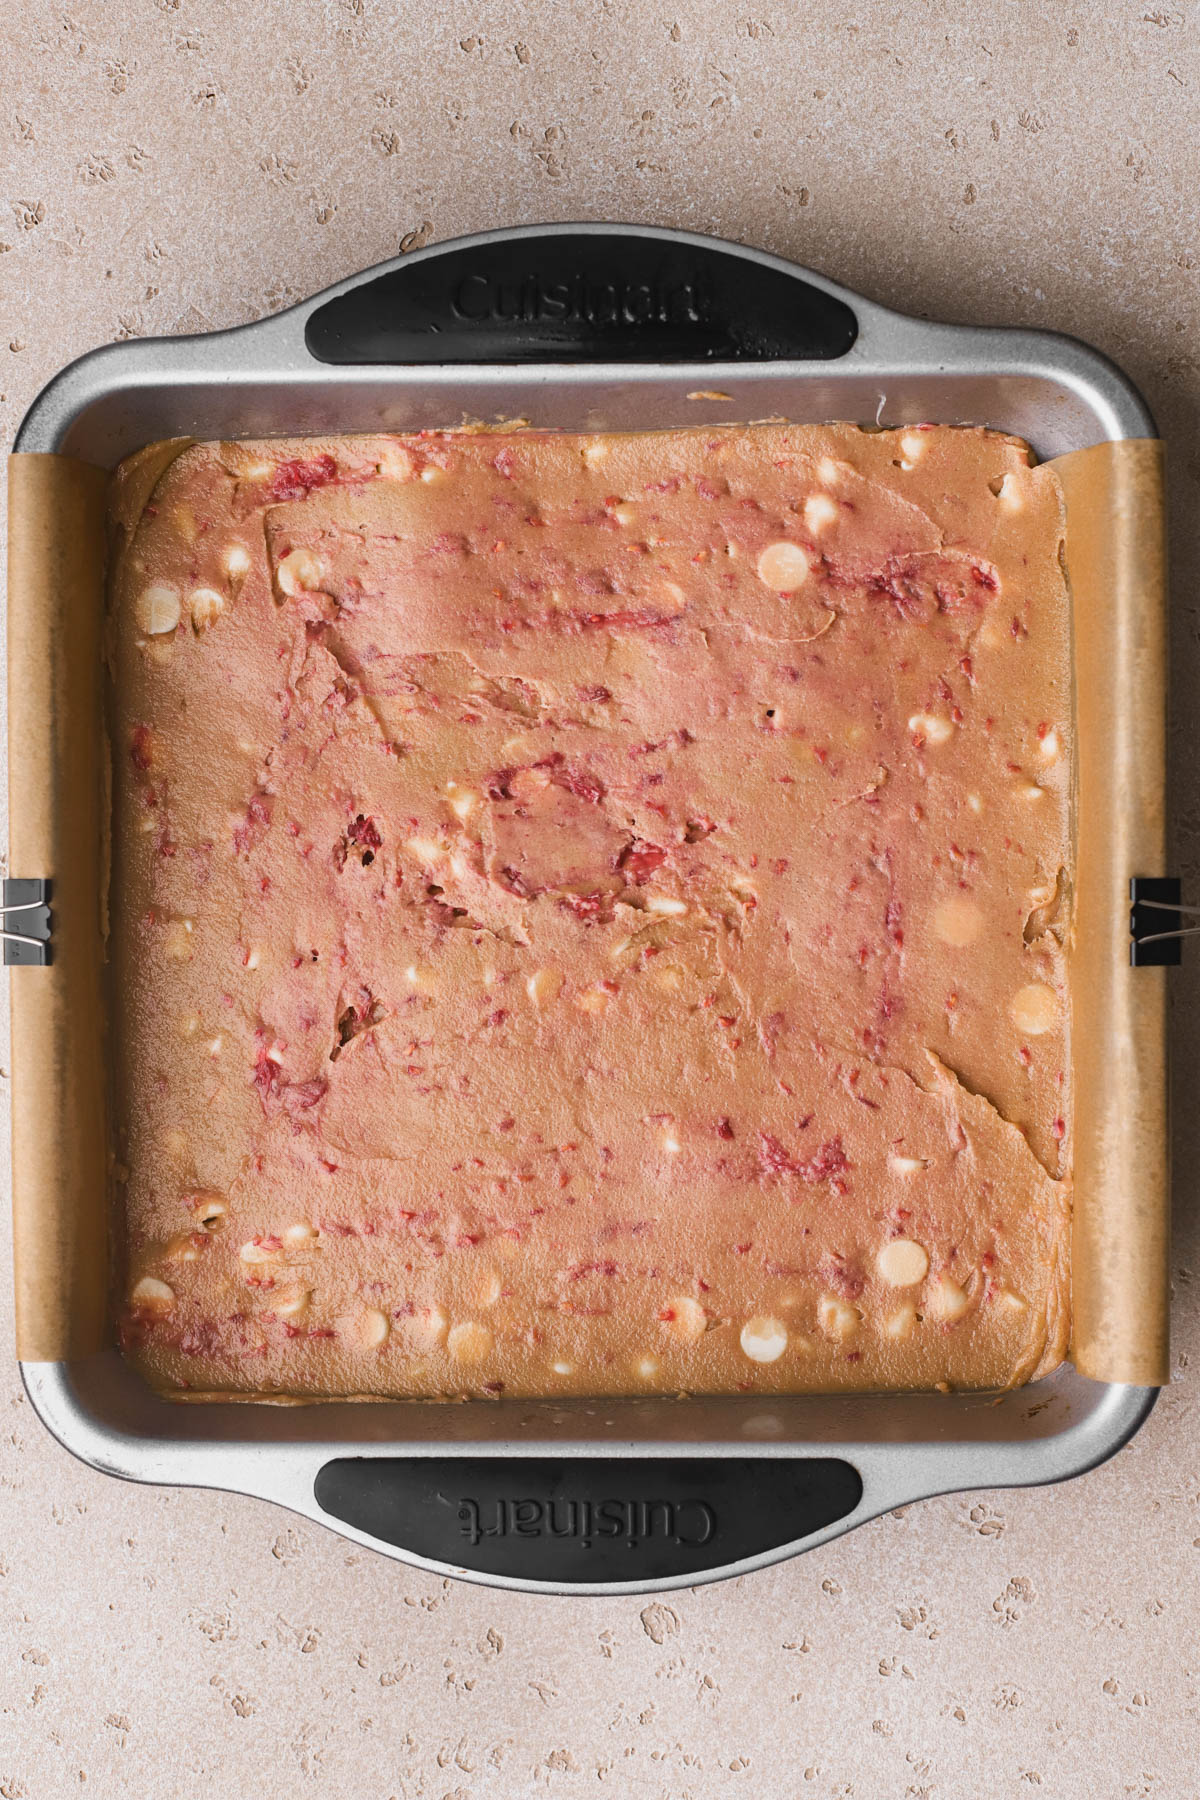 Blondies with raspberries in 8x8 baking pan. 